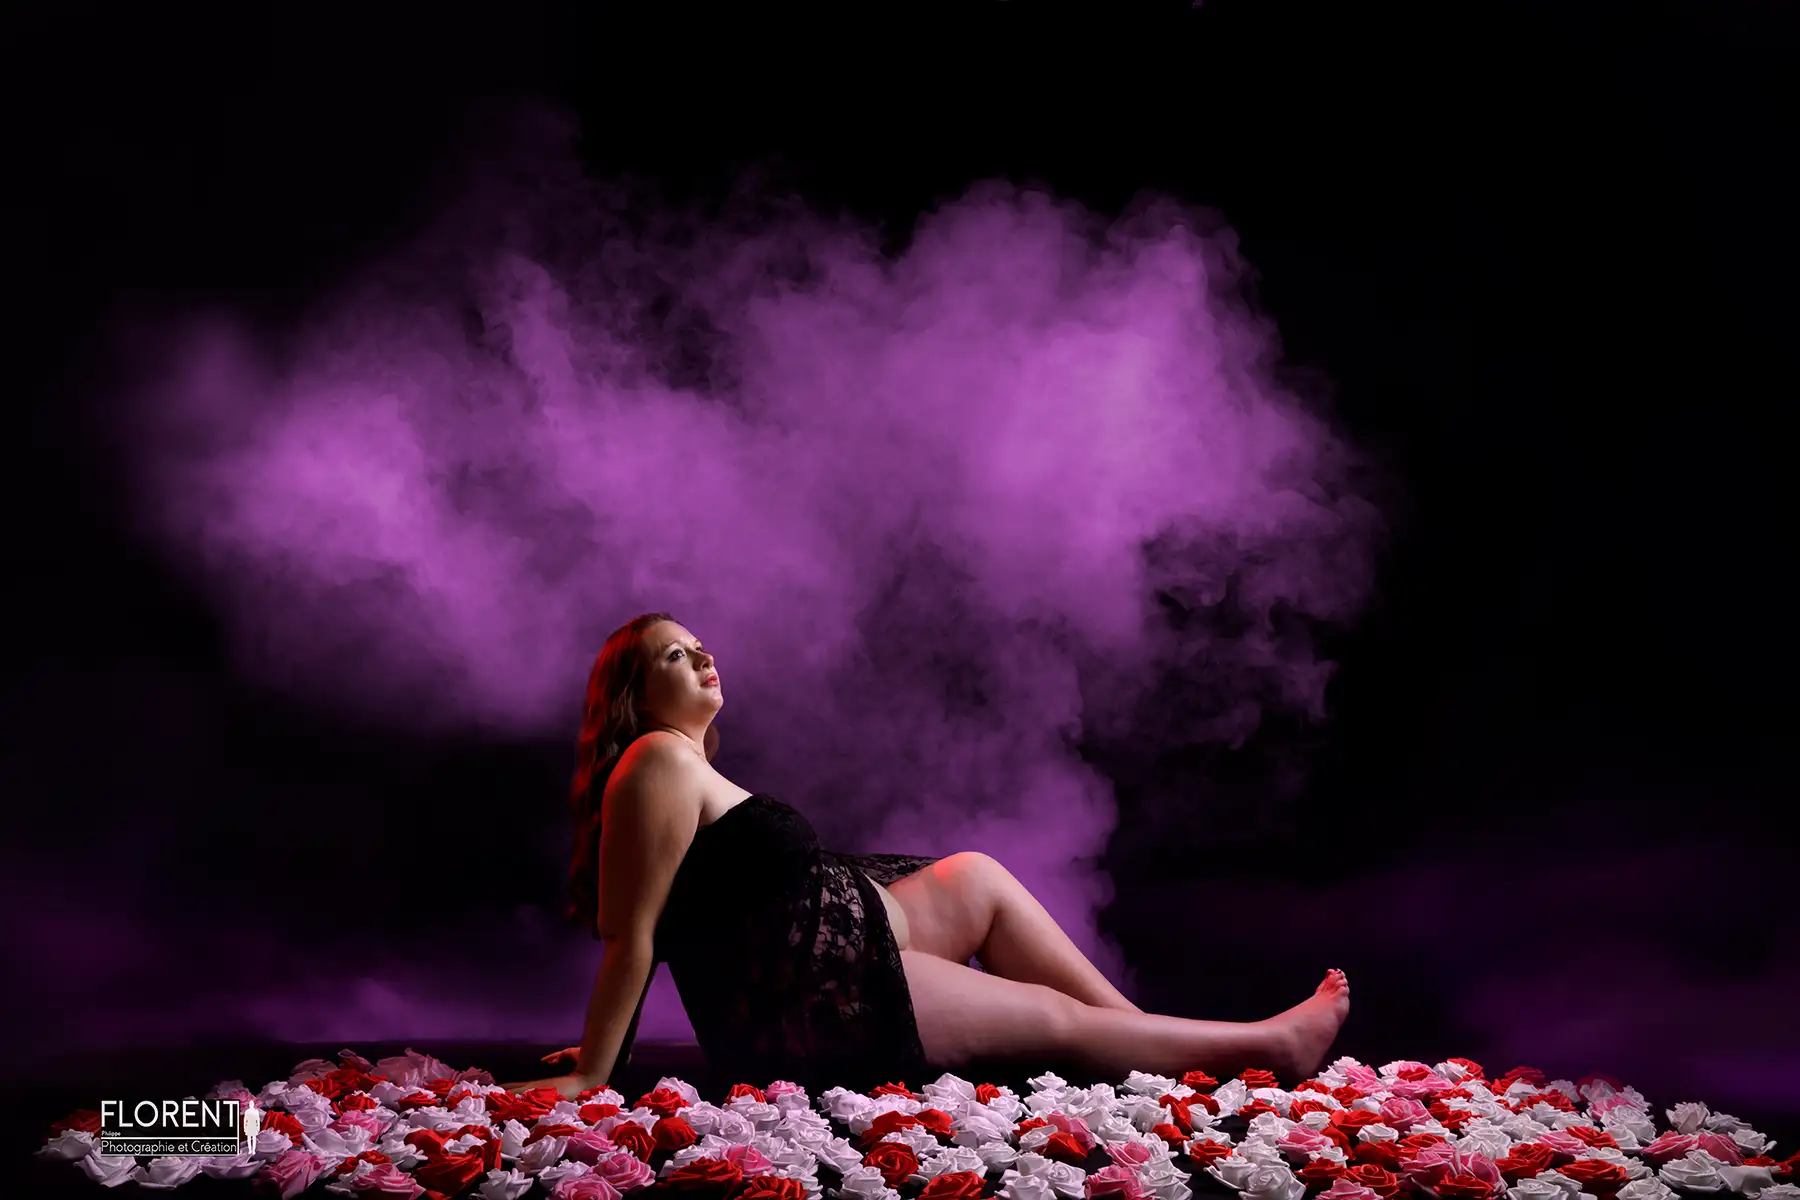 photographe maternite maman assise sur tapis de roses fumée rose florent studio fanie photographe boulogne sur mer lille le touquet paris calais saint omer arras berck